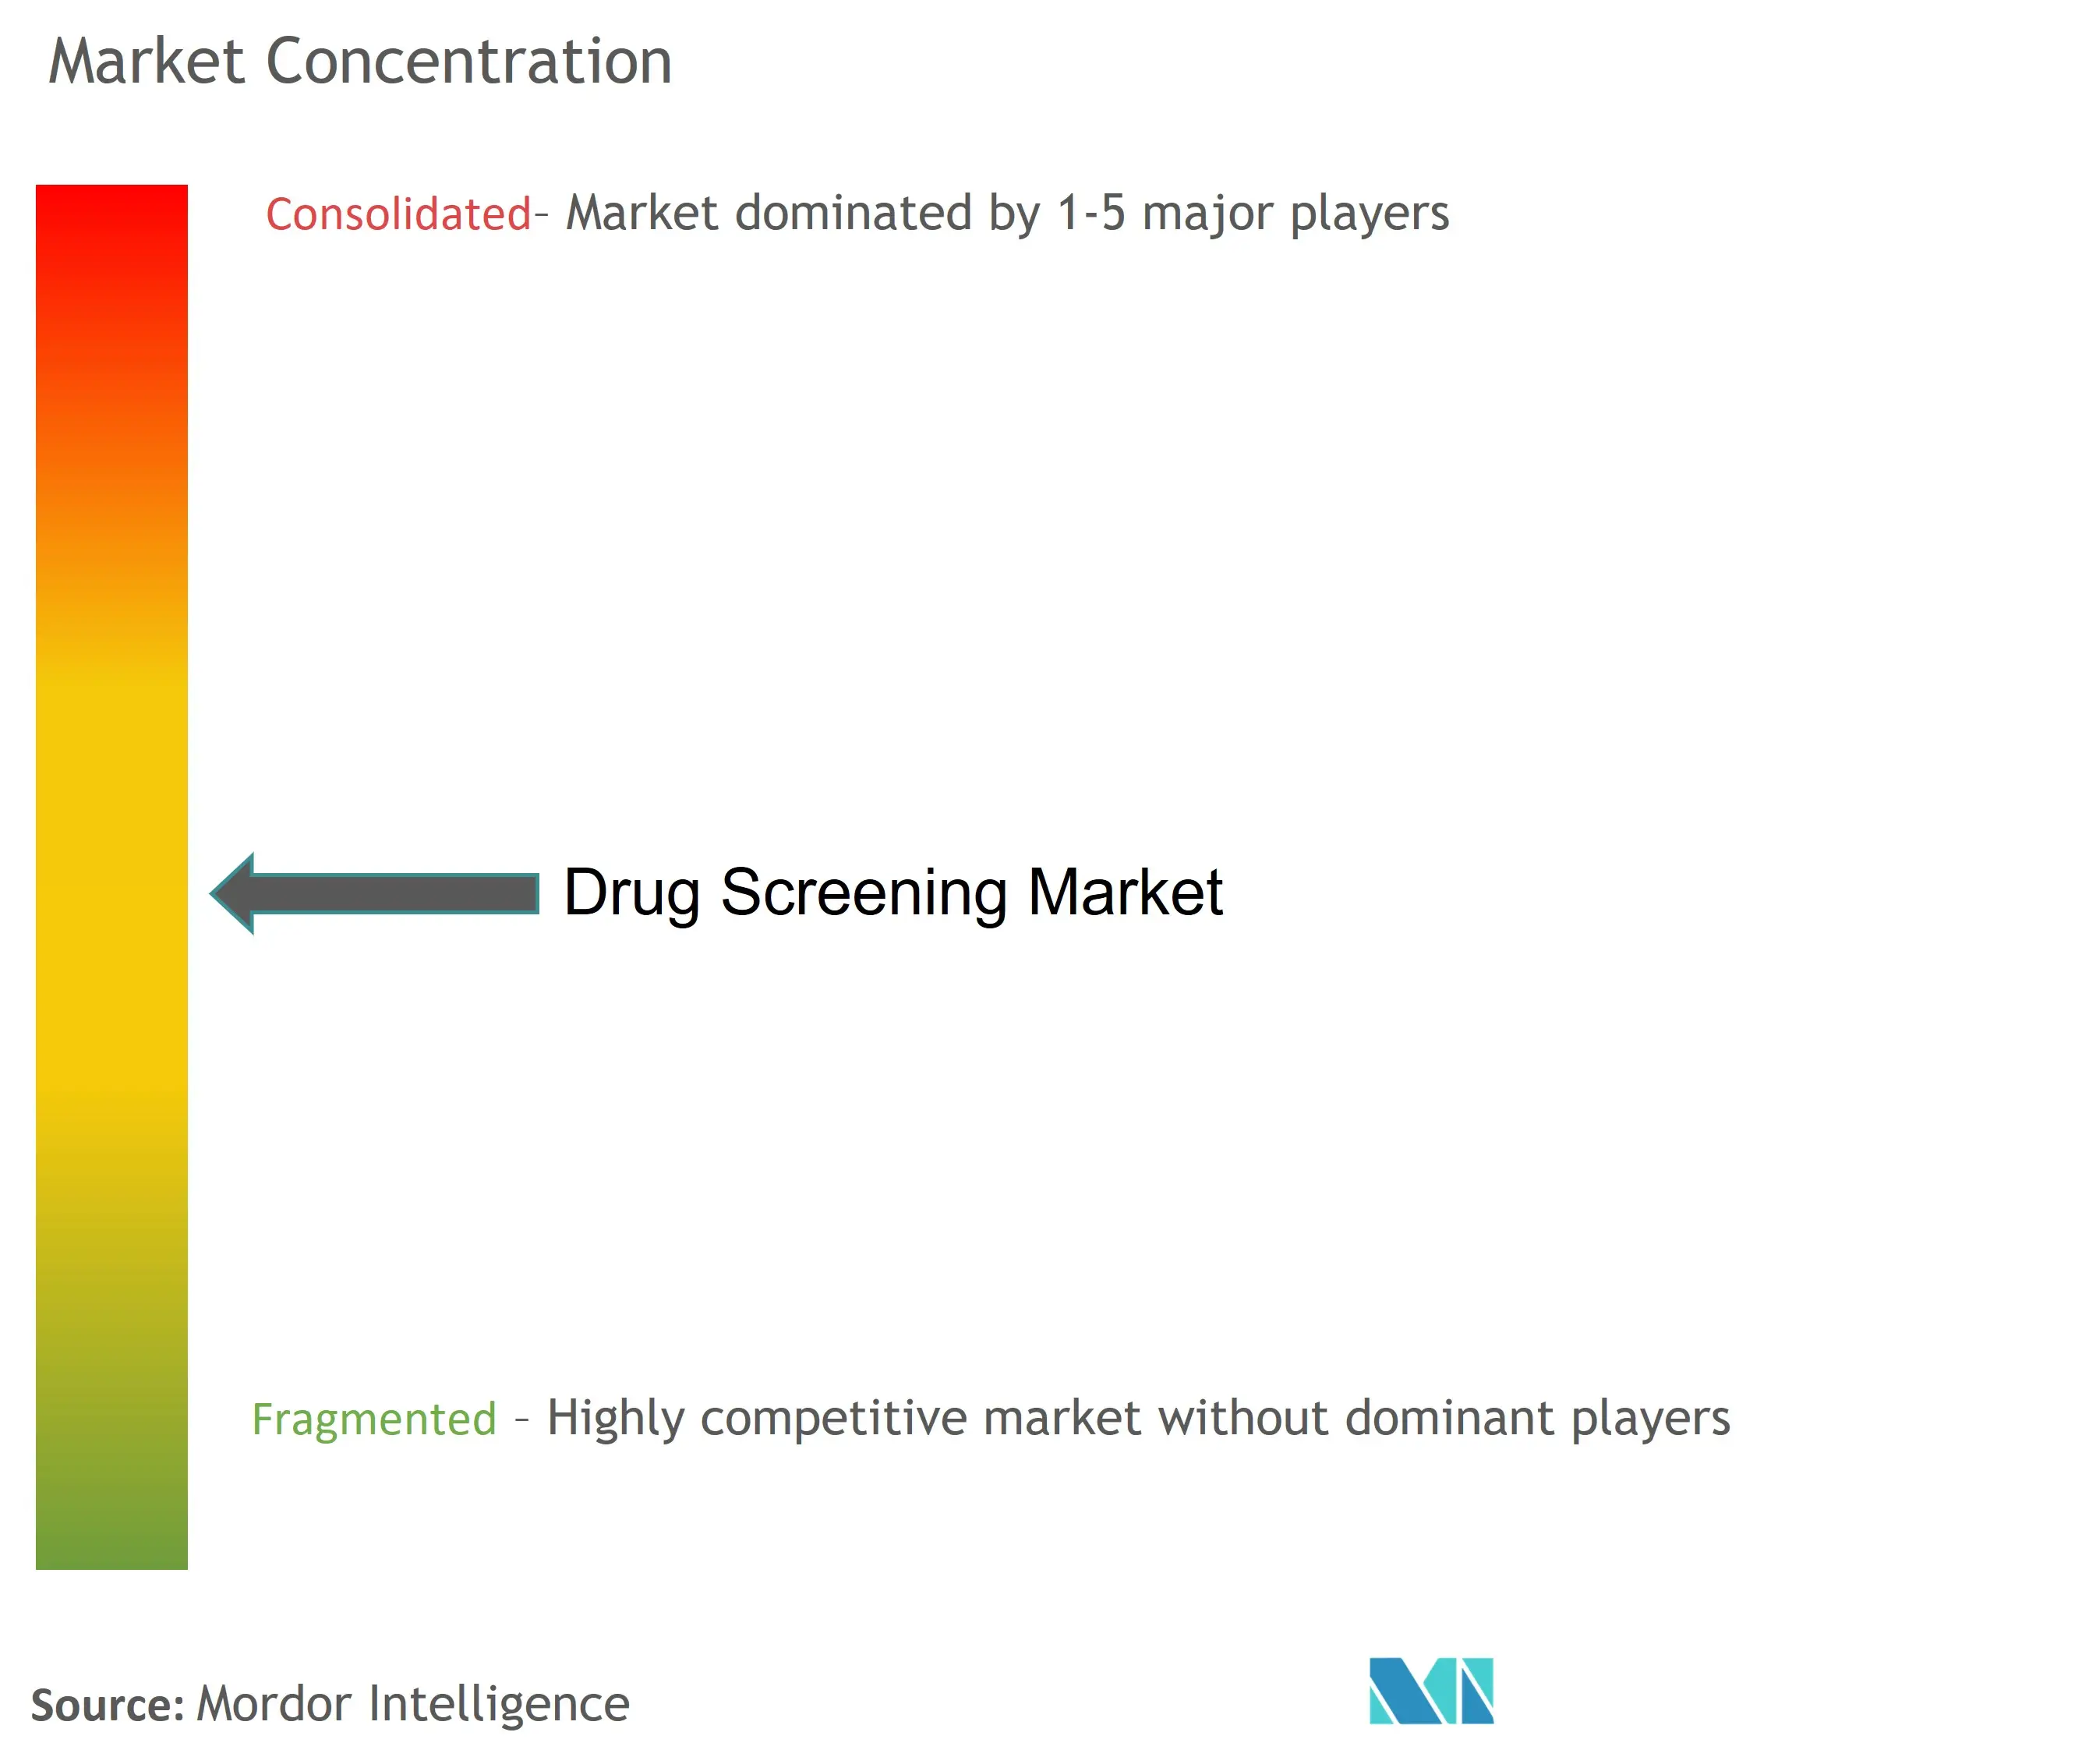 Drug Screening Market Concentration